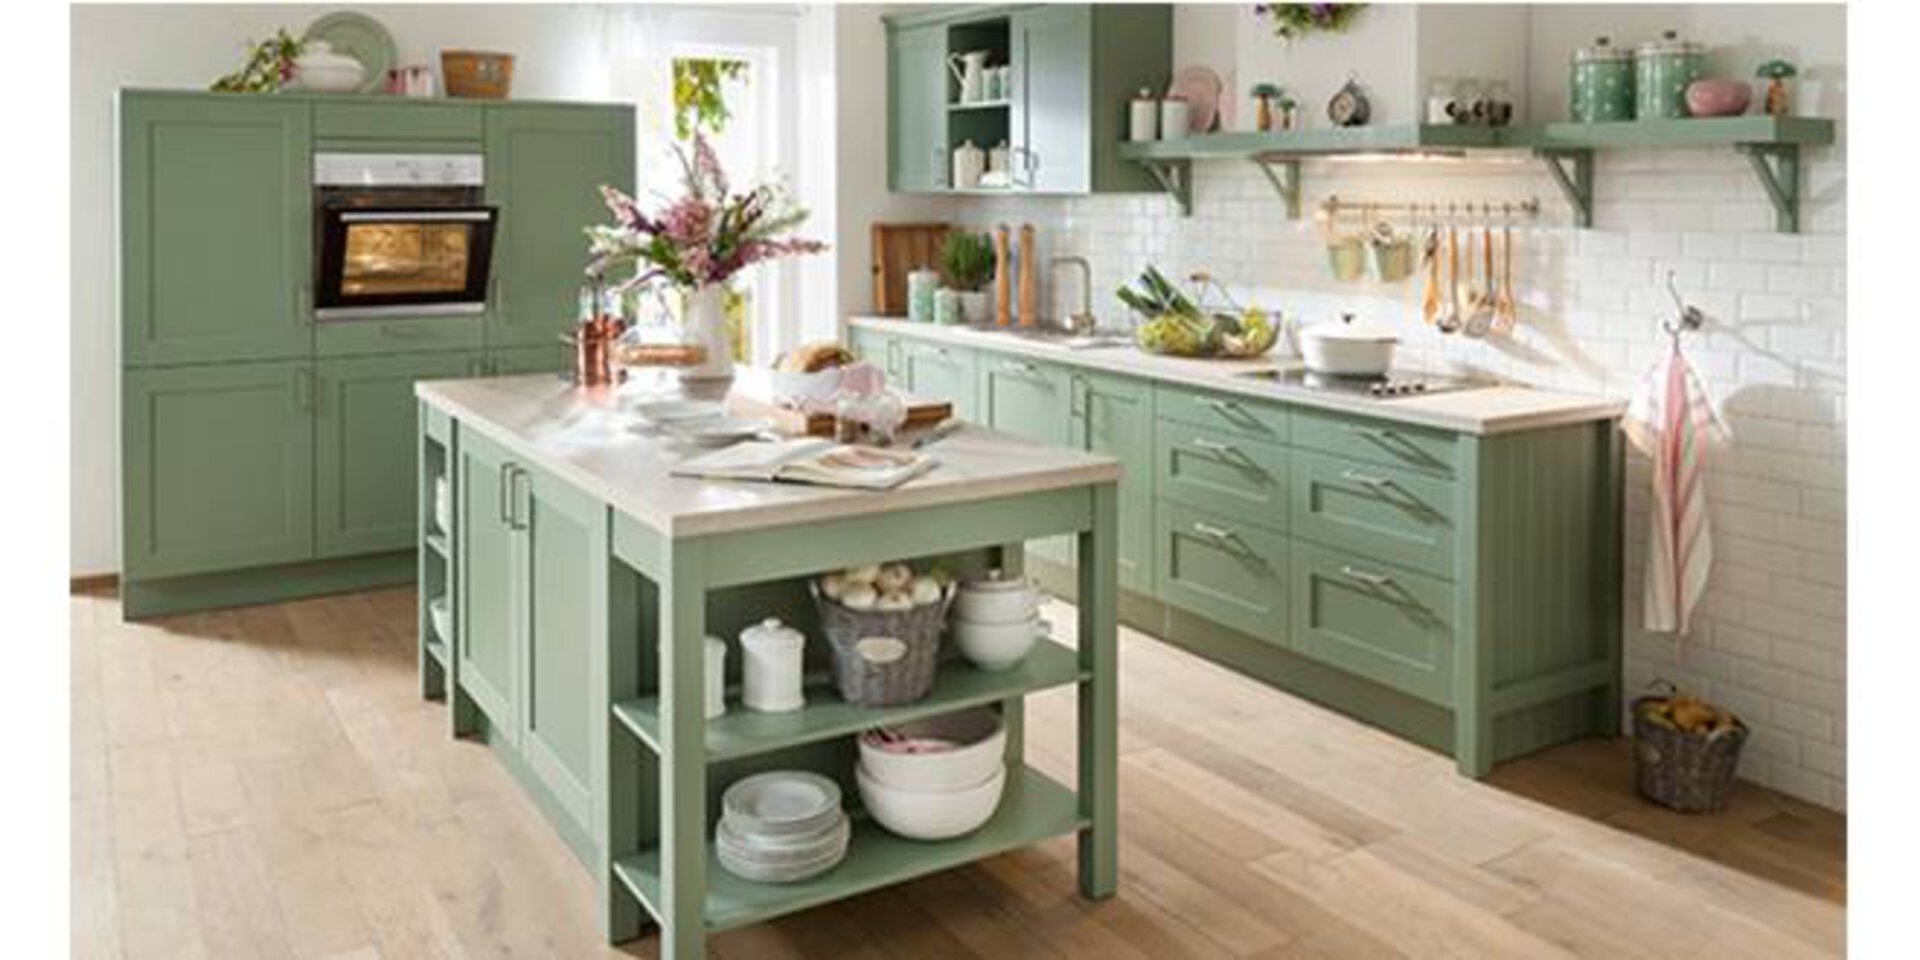 Planungsküche im Landhausstill mit grünen Holzmöbeln und rustikaler Kücheninsel.